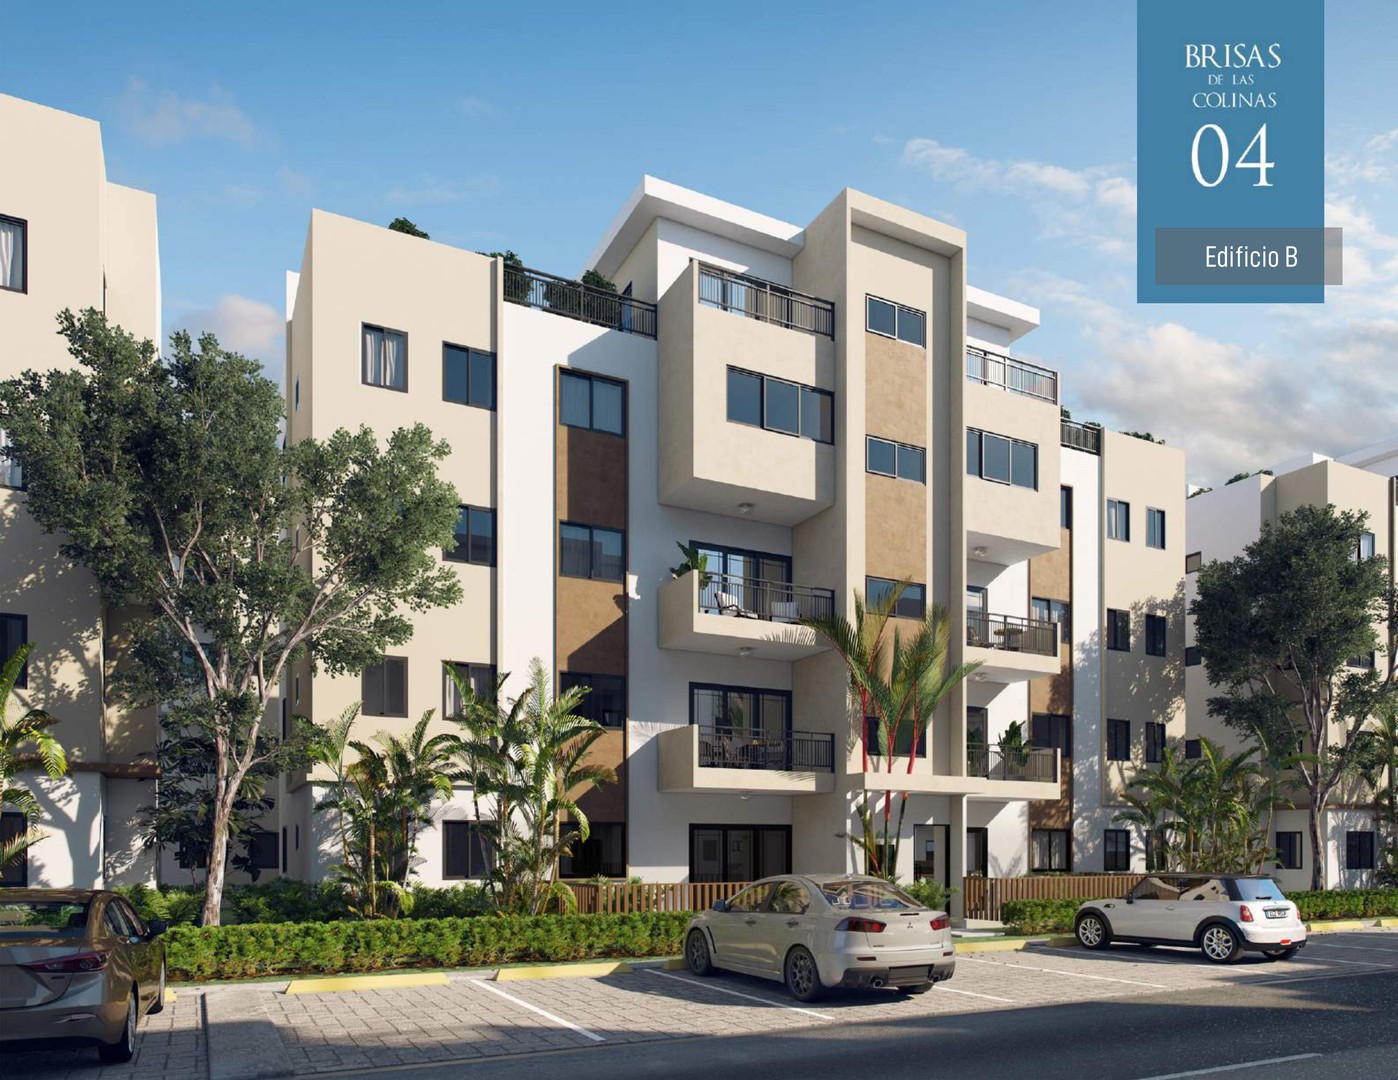 apartamentos - Apartamentos en ventas en el proyecto Brisas de las Colinas 4, Santo Domingo